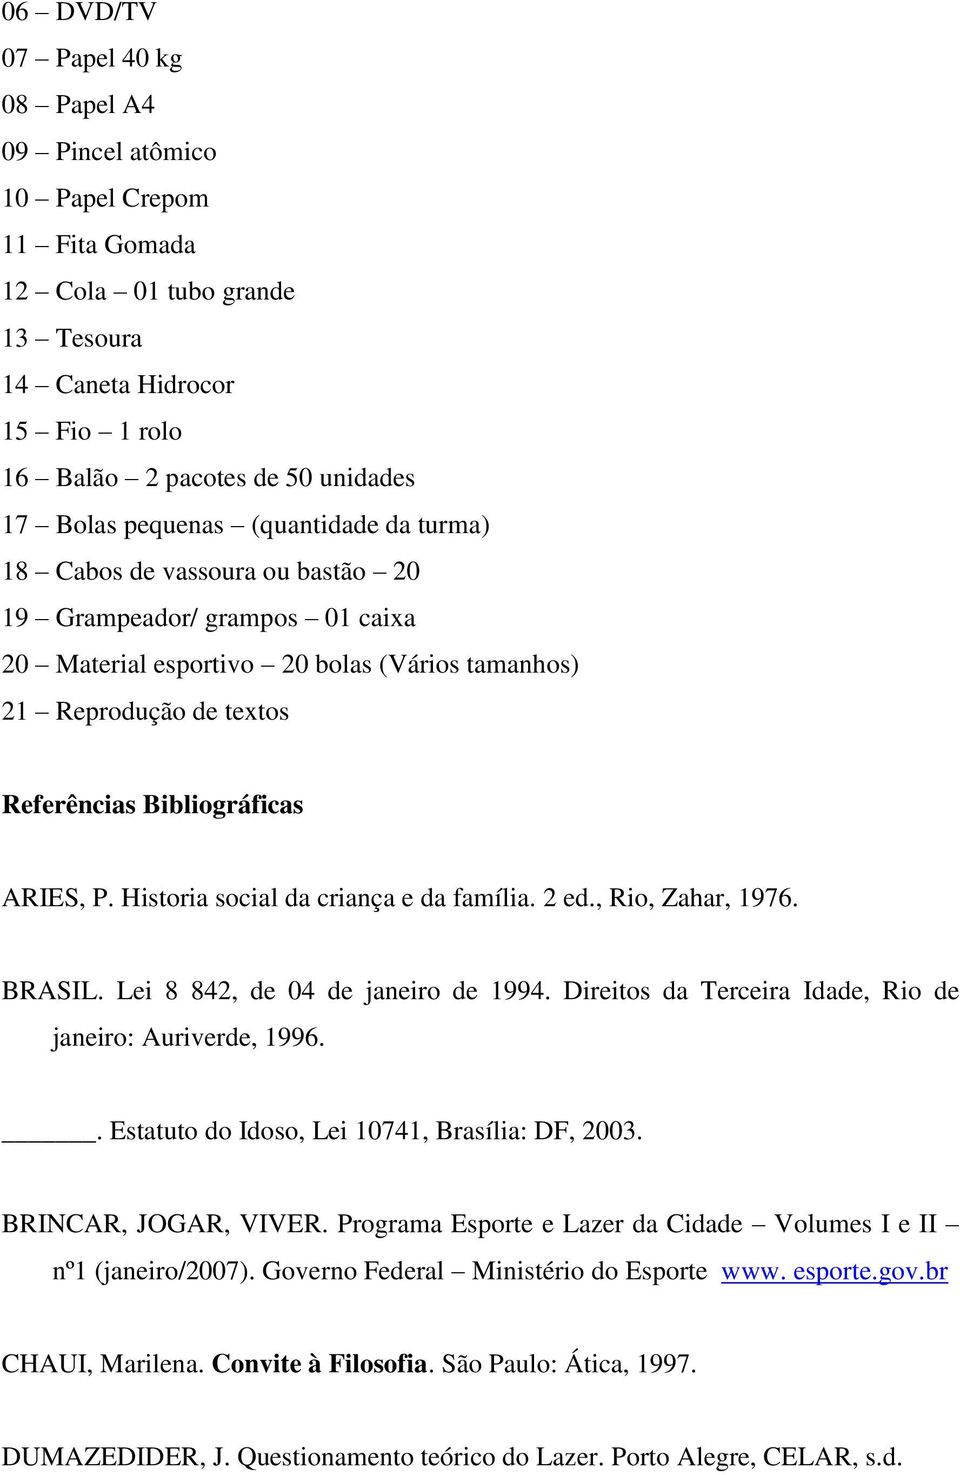 ARIES, P. Historia social da criança e da família. 2 ed., Rio, Zahar, 1976. BRASIL. Lei 8 842, de 04 de janeiro de 1994. Direitos da Terceira Idade, Rio de janeiro: Auriverde, 1996.